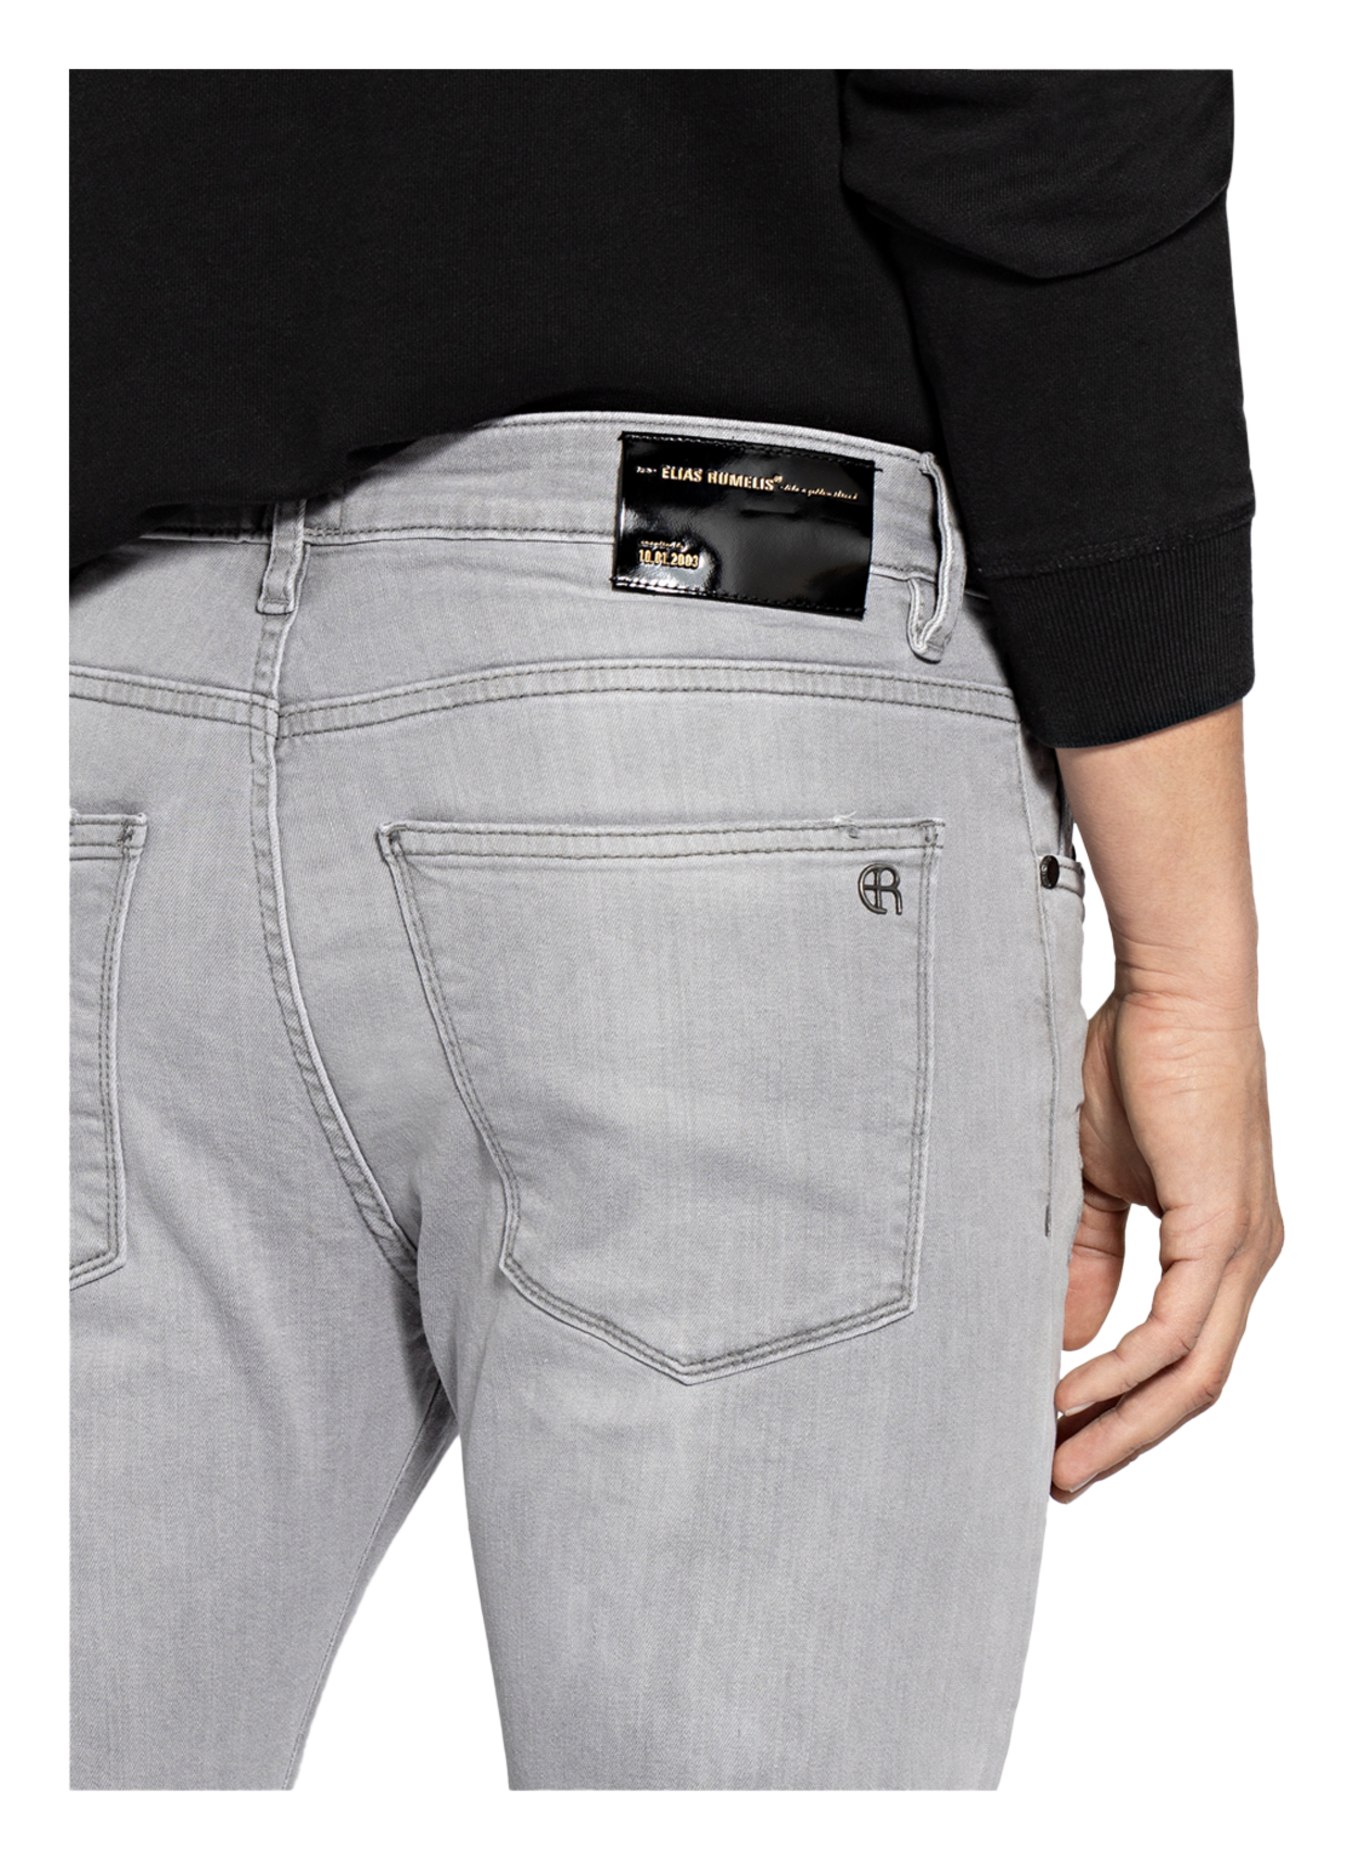 ELIAS RUMELIS Destroyed Jeans ERNOEL Comfort Fit, Farbe: 559 flint grey (Bild 5)